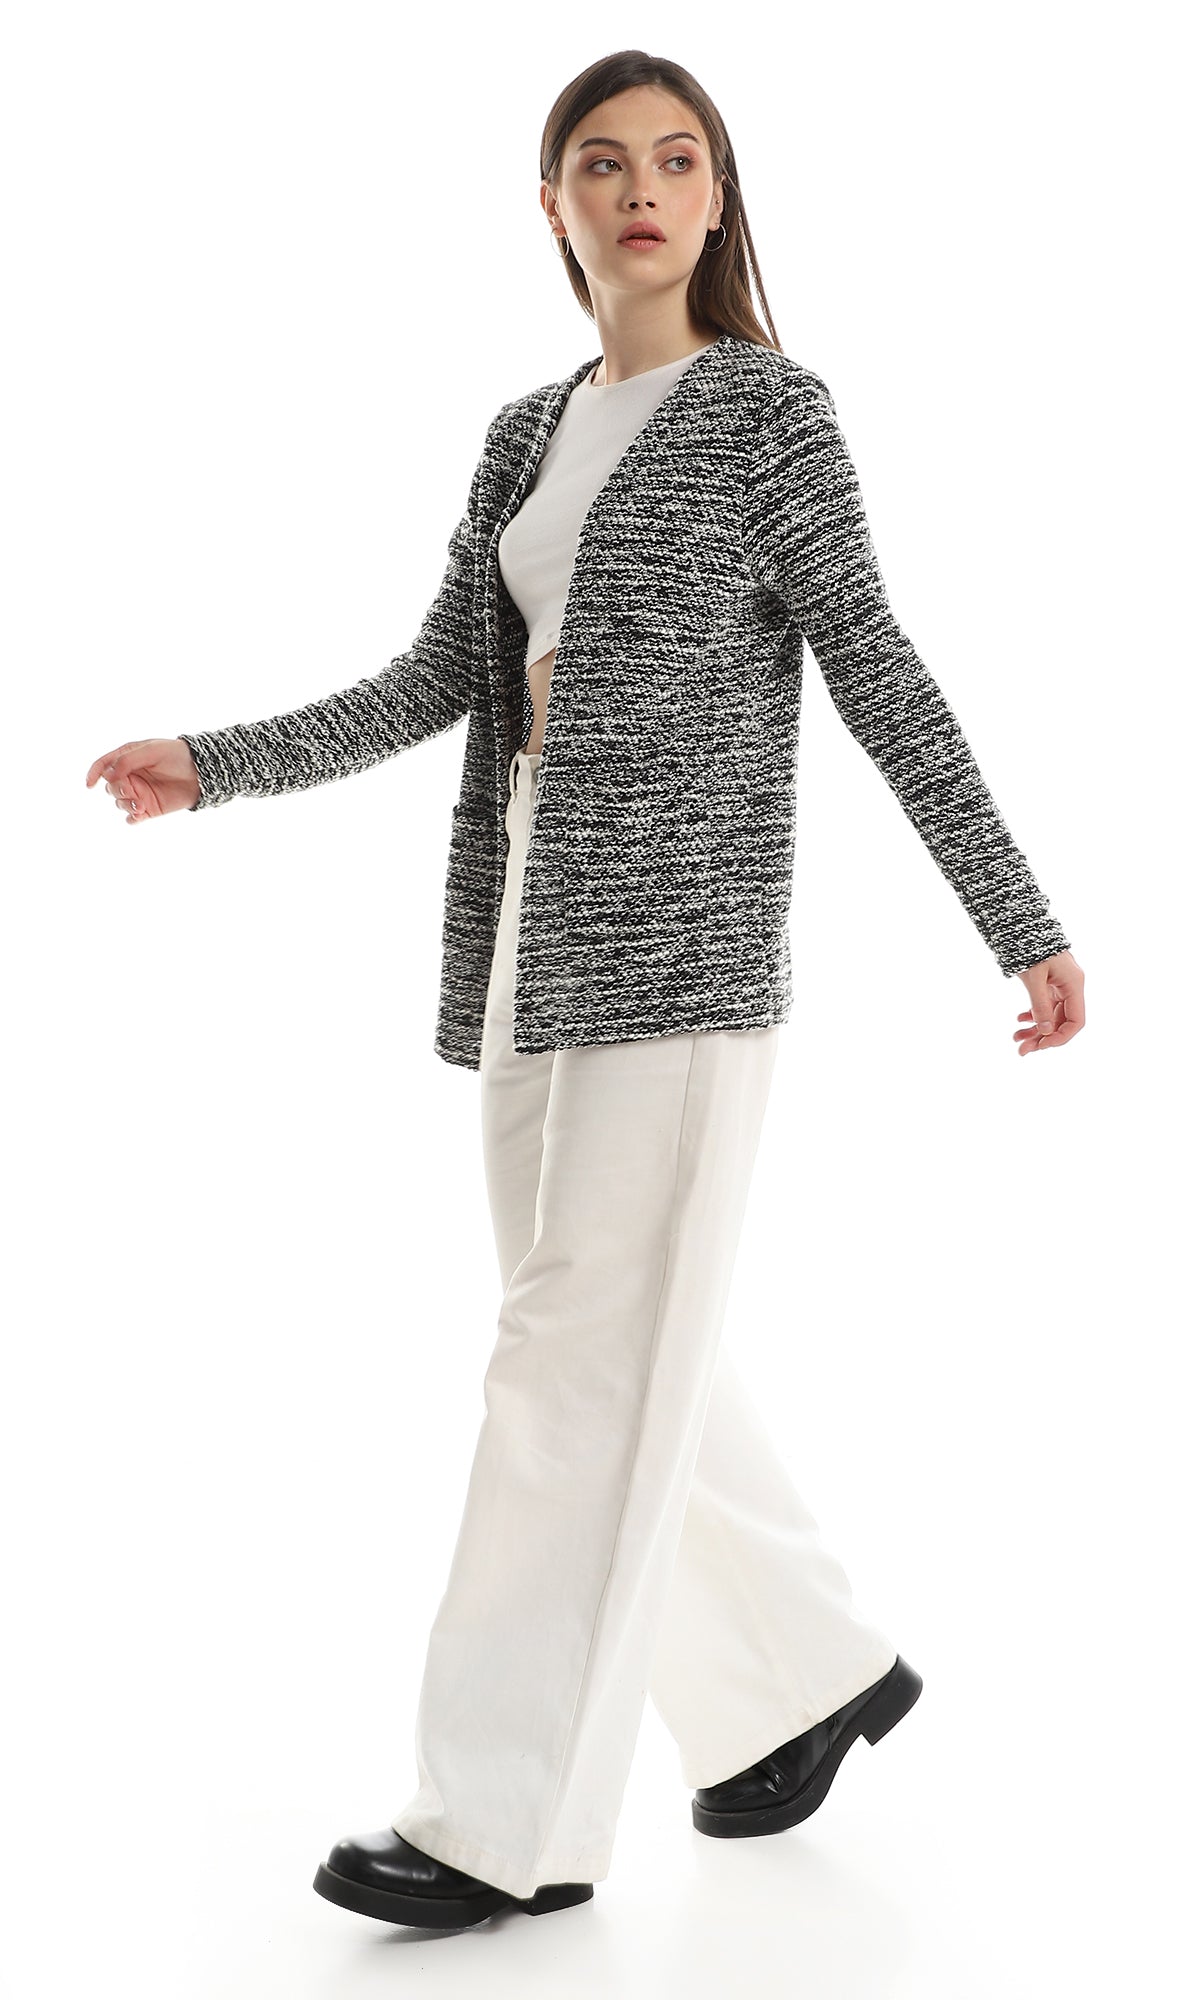 O153015 Trendy Full Sleeves Slip On Cardigan - Off White & Black